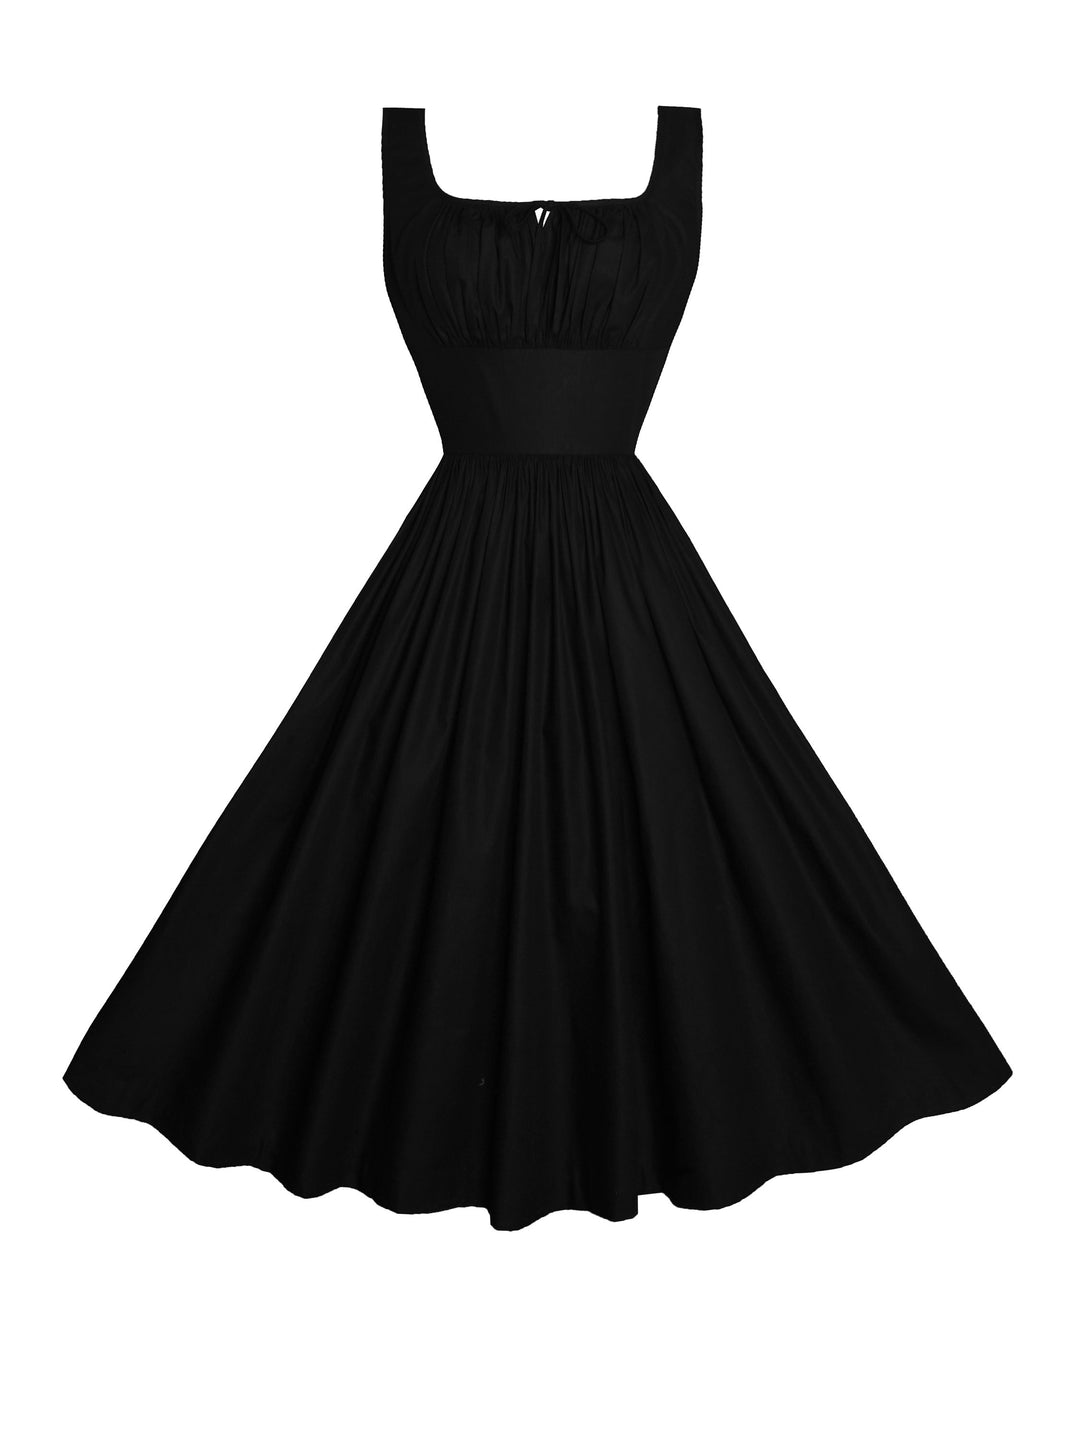 MTO - Michelle Dress in Raven Black Cotton